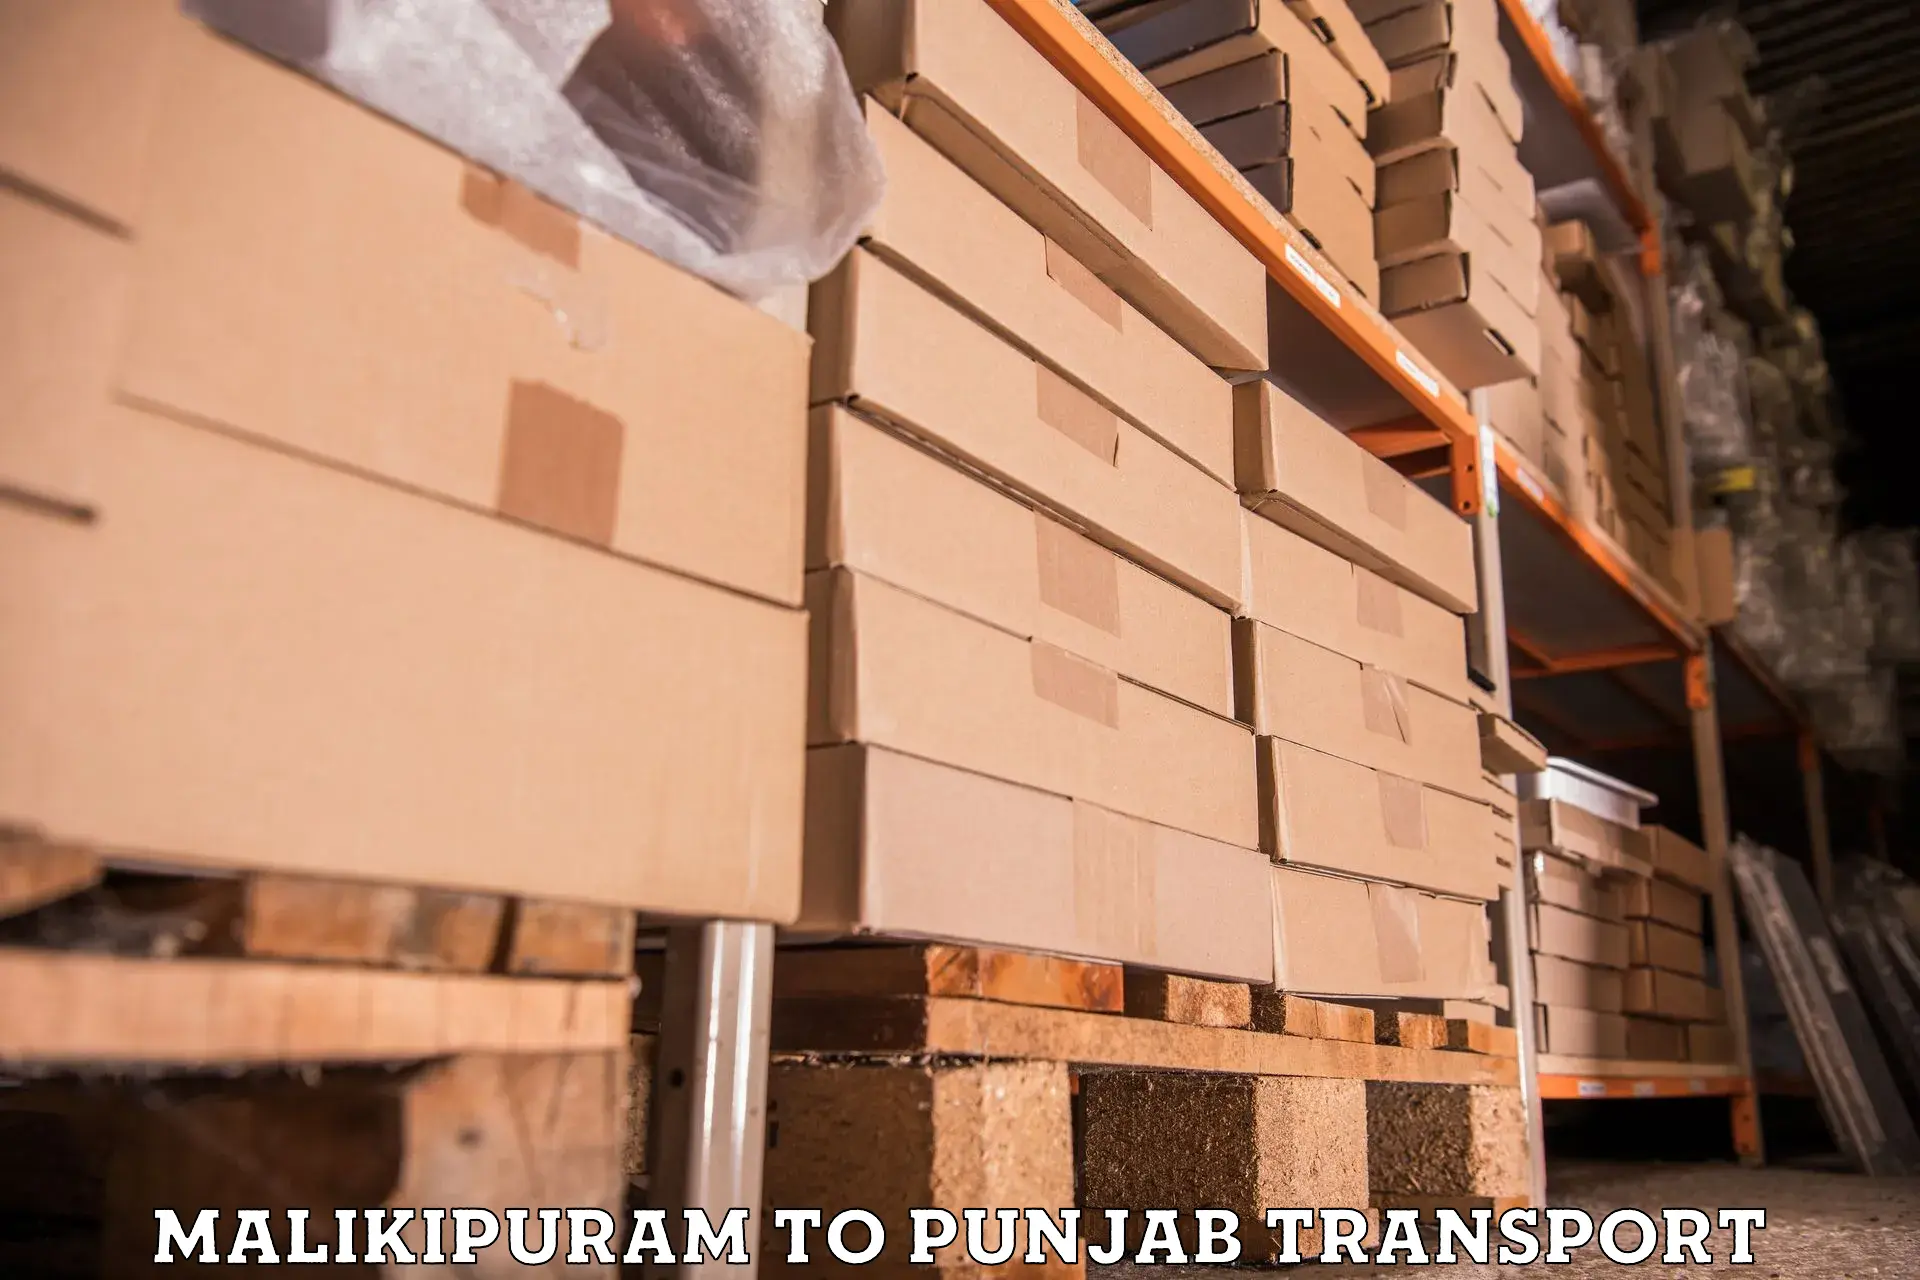 Transport services Malikipuram to Punjab